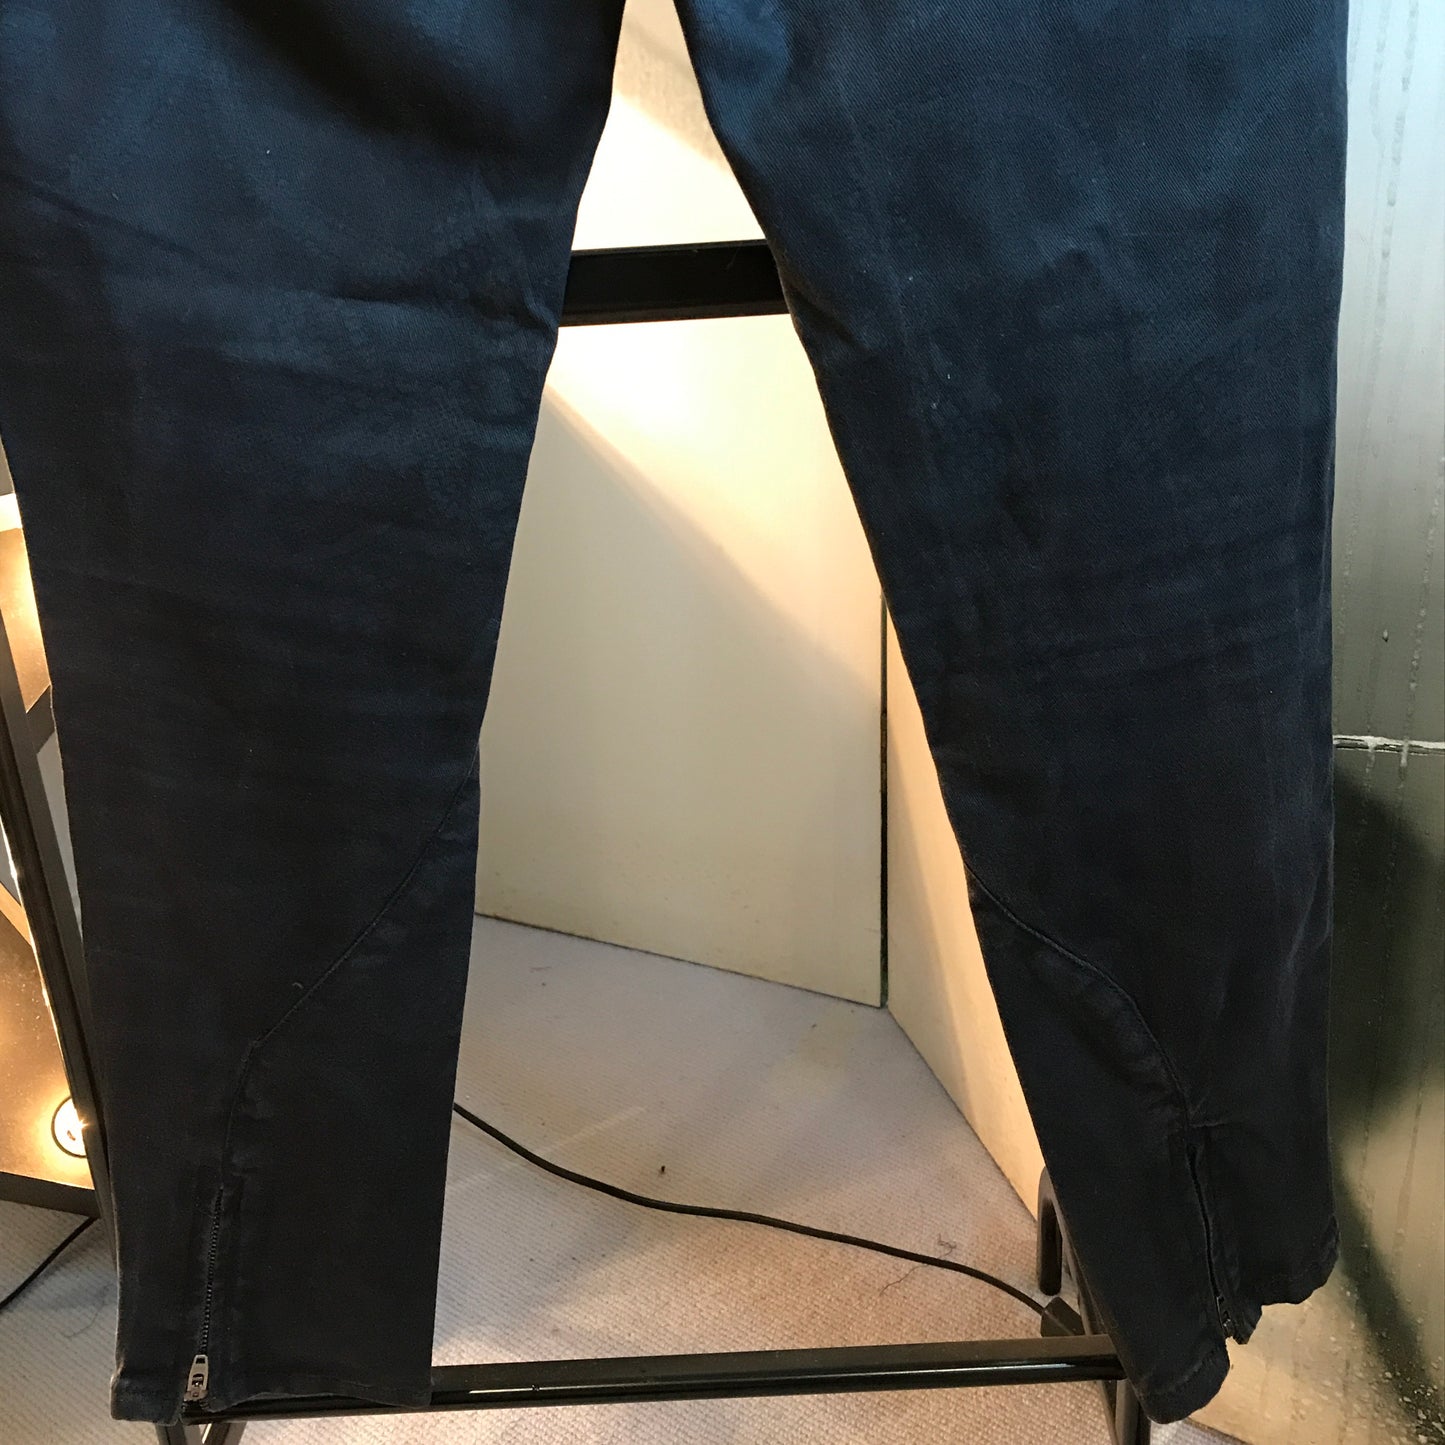 All Saints Black Ankle-Zipper Jeans